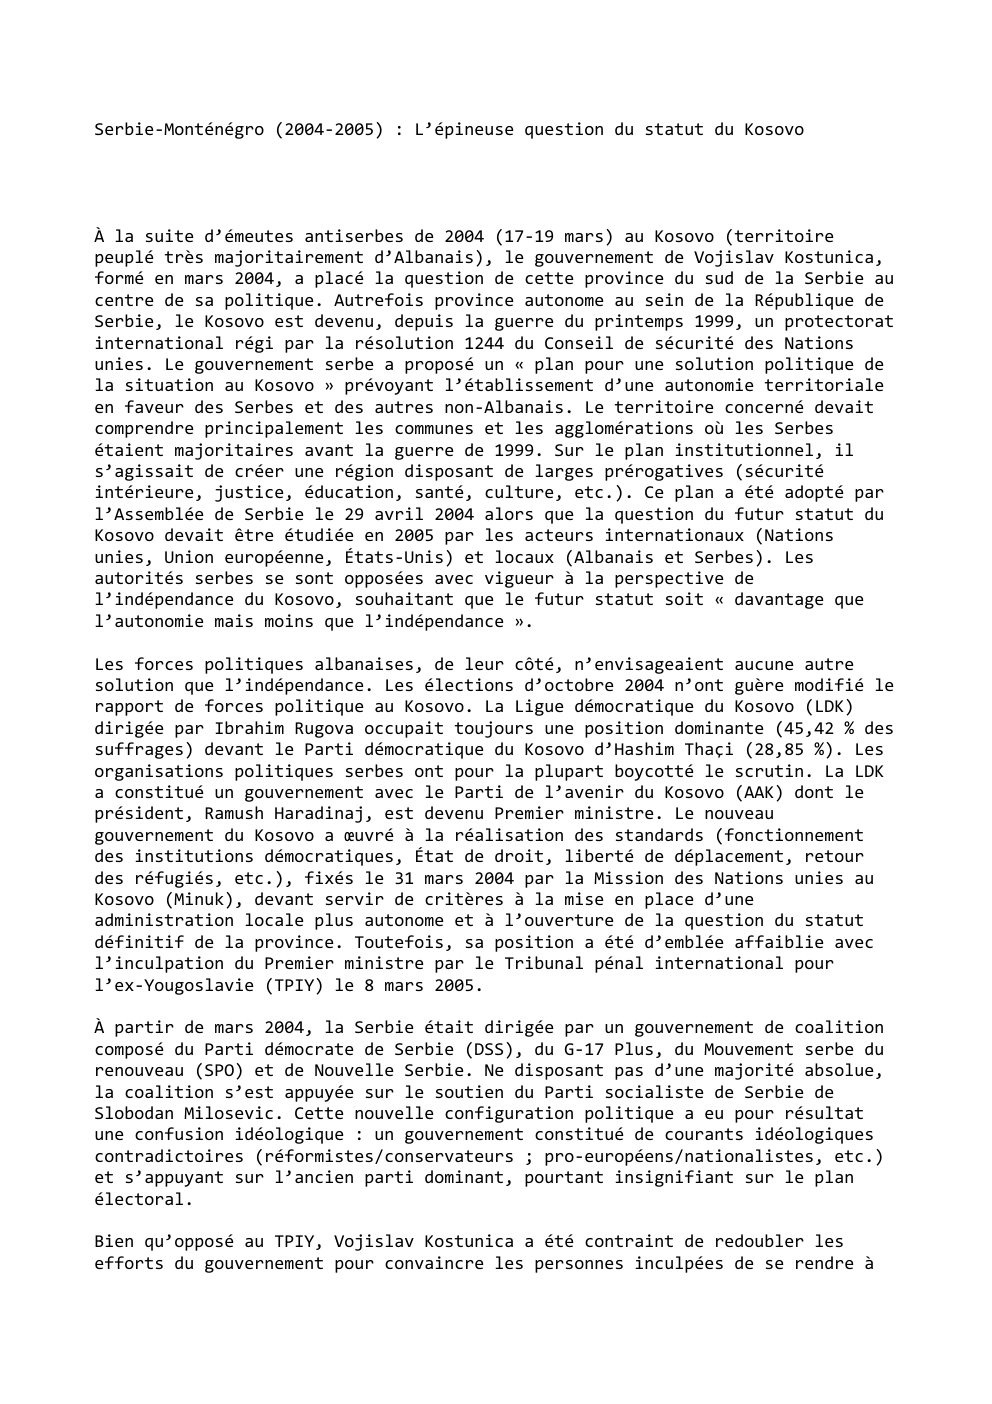 Prévisualisation du document Serbie-Monténégro (2004-2005) : L’épineuse question du statut du Kosovo

À la suite d’émeutes antiserbes de 2004 (17-19 mars) au Kosovo...